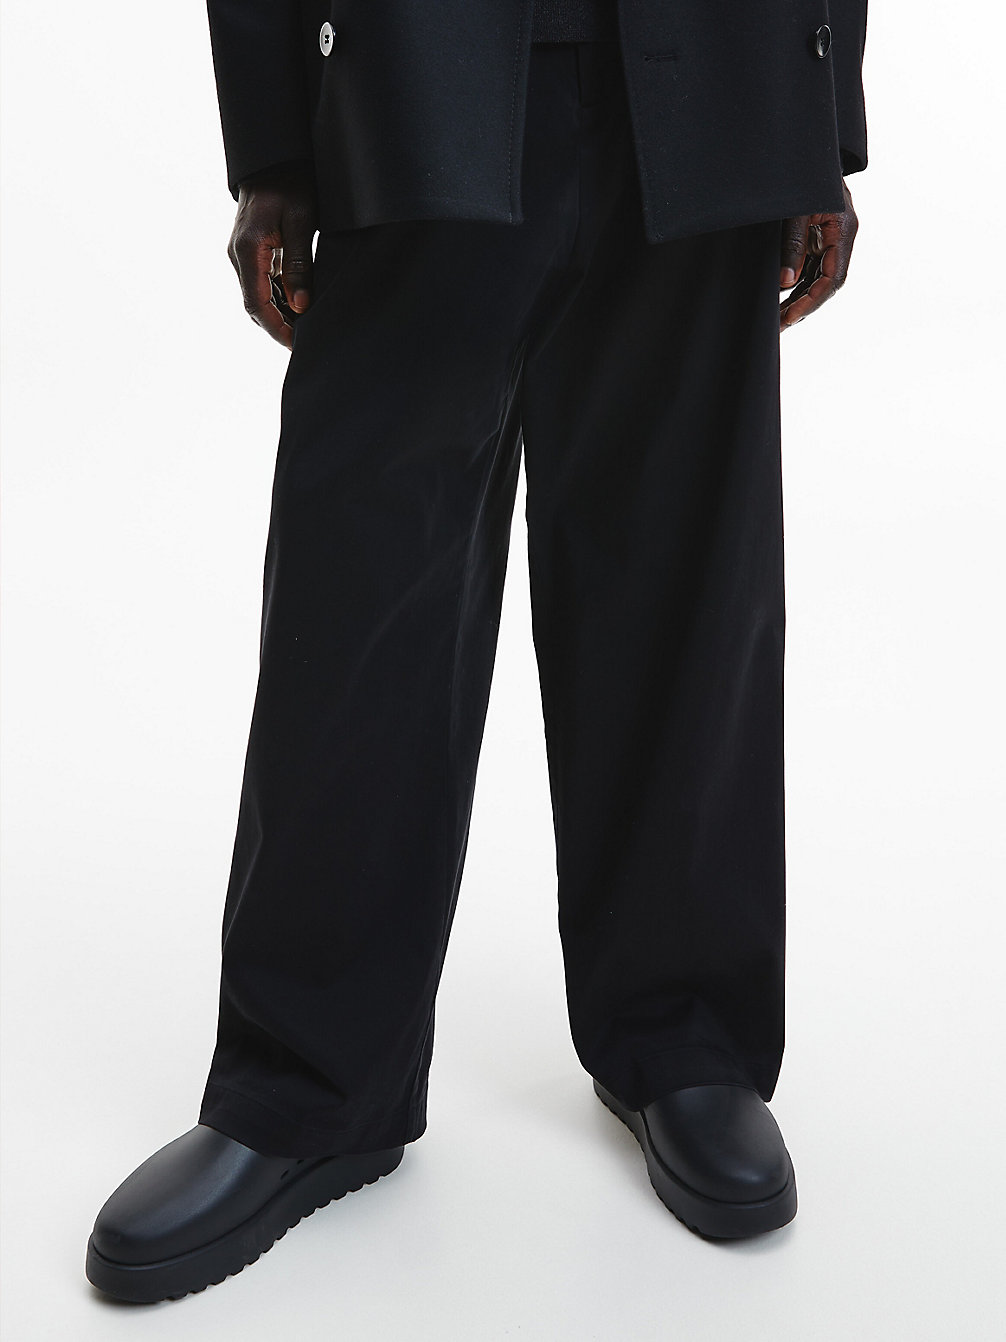 CK BLACK > Swobodne Spodnie Z Szerokimi Nogawkami > undefined Mężczyźni - Calvin Klein